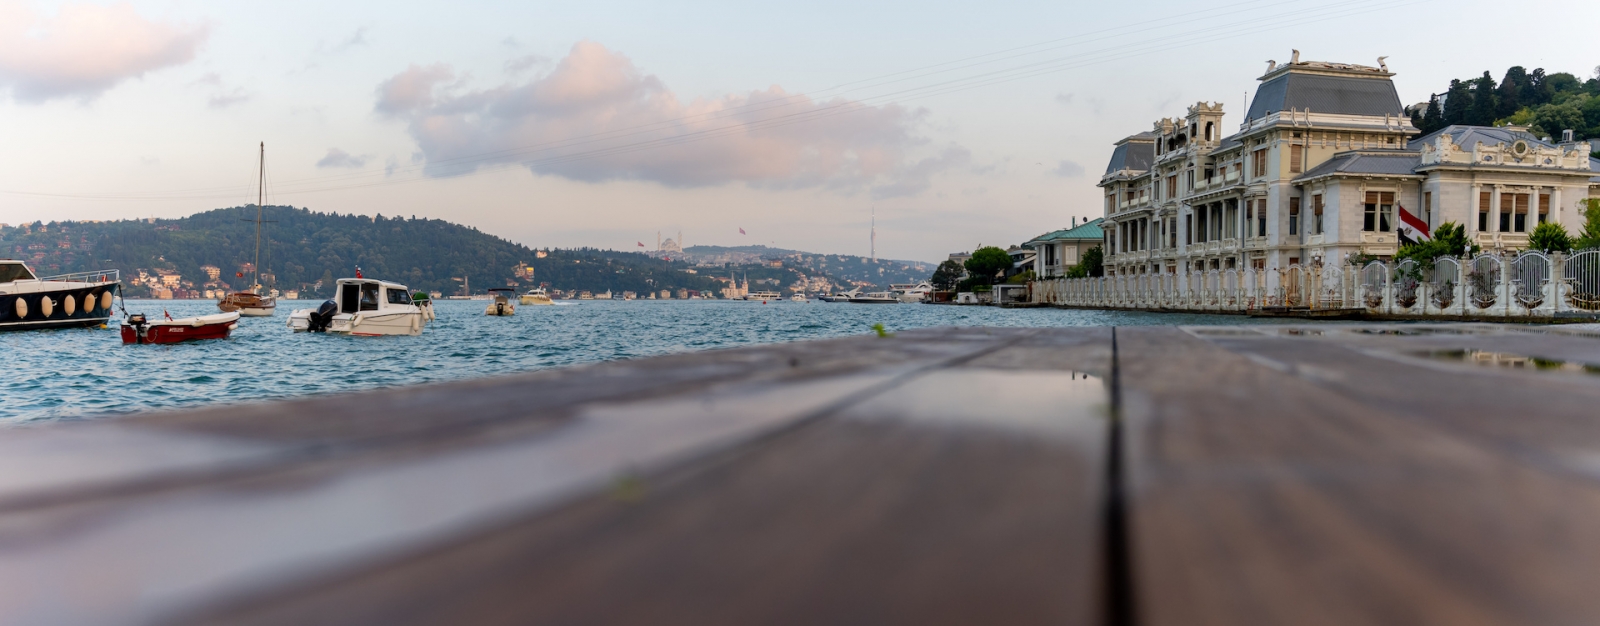 Vue sur le Bosphore, les bateaux, le banc de la cour et les manoirs historiques depuis la plage.  La plage de Bebek.  Besiktas Istanbul Turquie